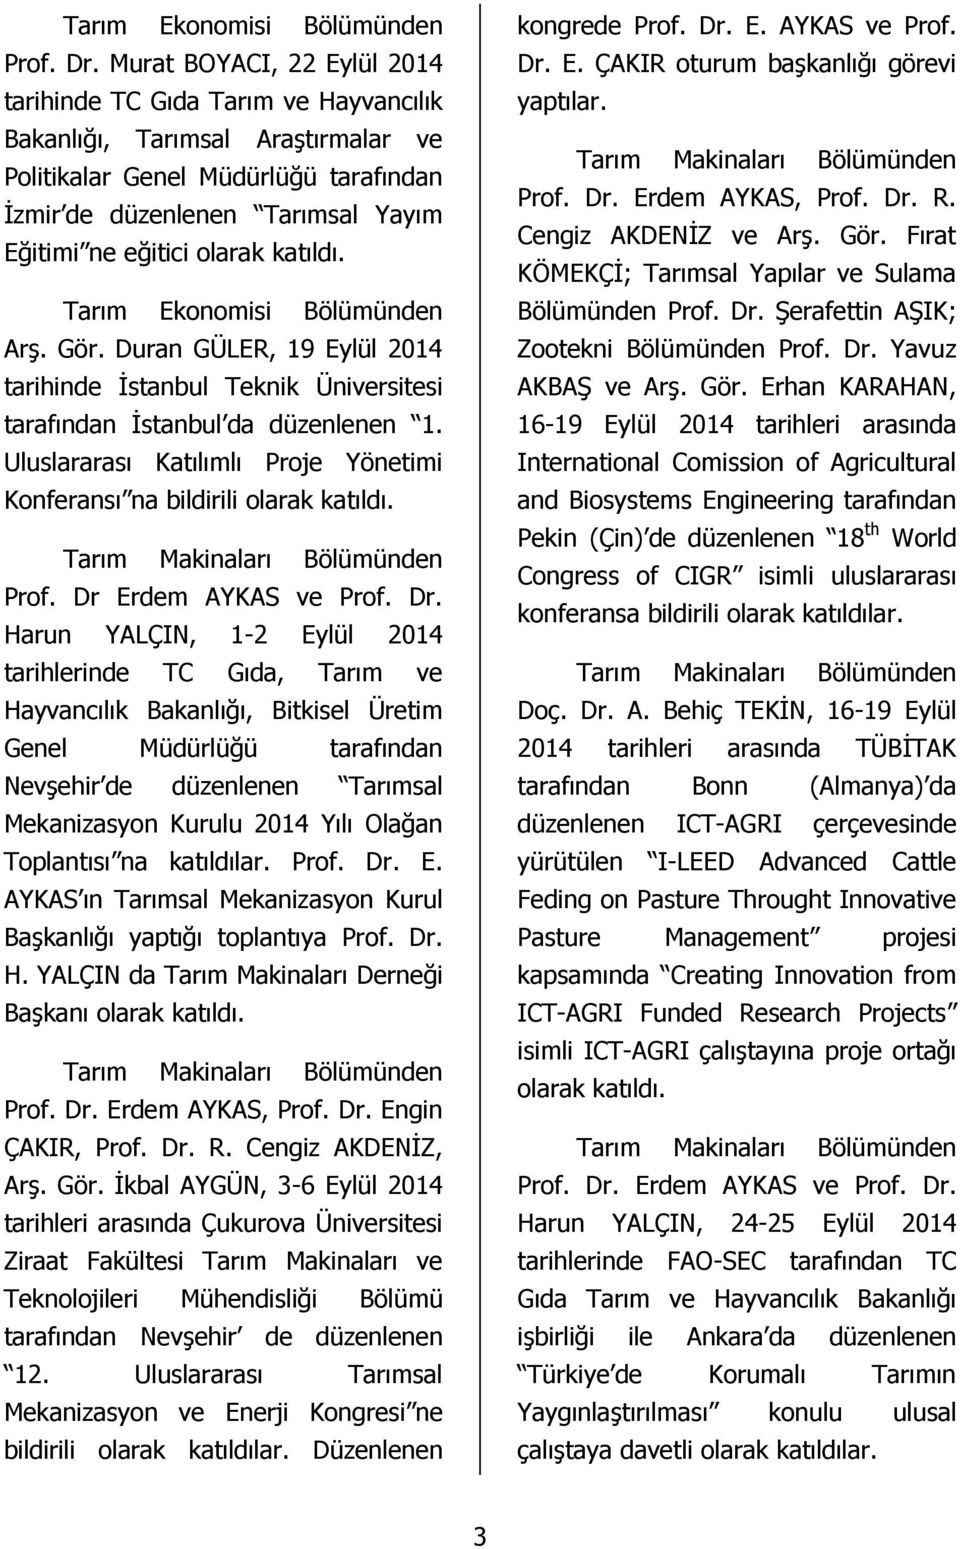 olarak katıldı. Tarım Ekonomisi Bölümünden Arş. Gör. Duran GÜLER, 19 Eylül 2014 tarihinde İstanbul Teknik Üniversitesi tarafından İstanbul da düzenlenen 1.